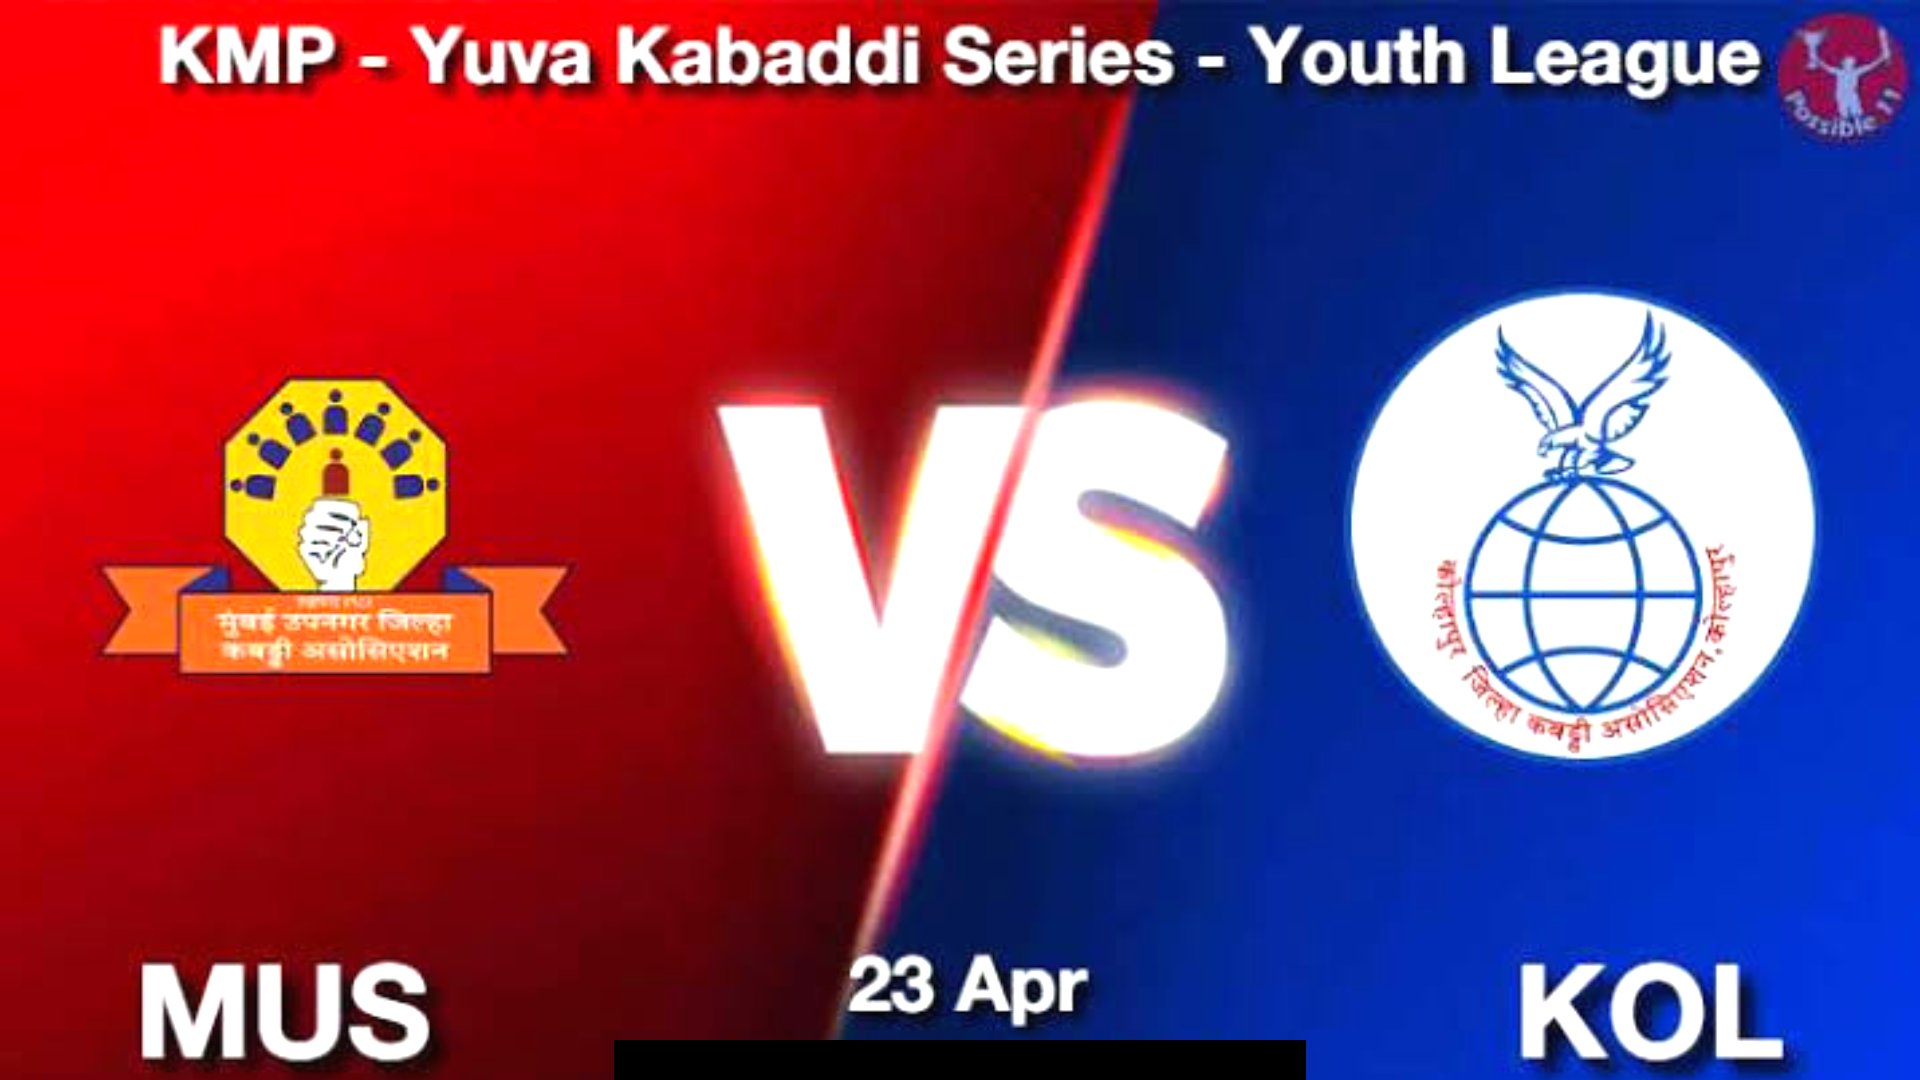 MUS vs KOL KMP Yuva Kabaddi Dream11 Prediction, Best Fantasy Cricket Team & Tips